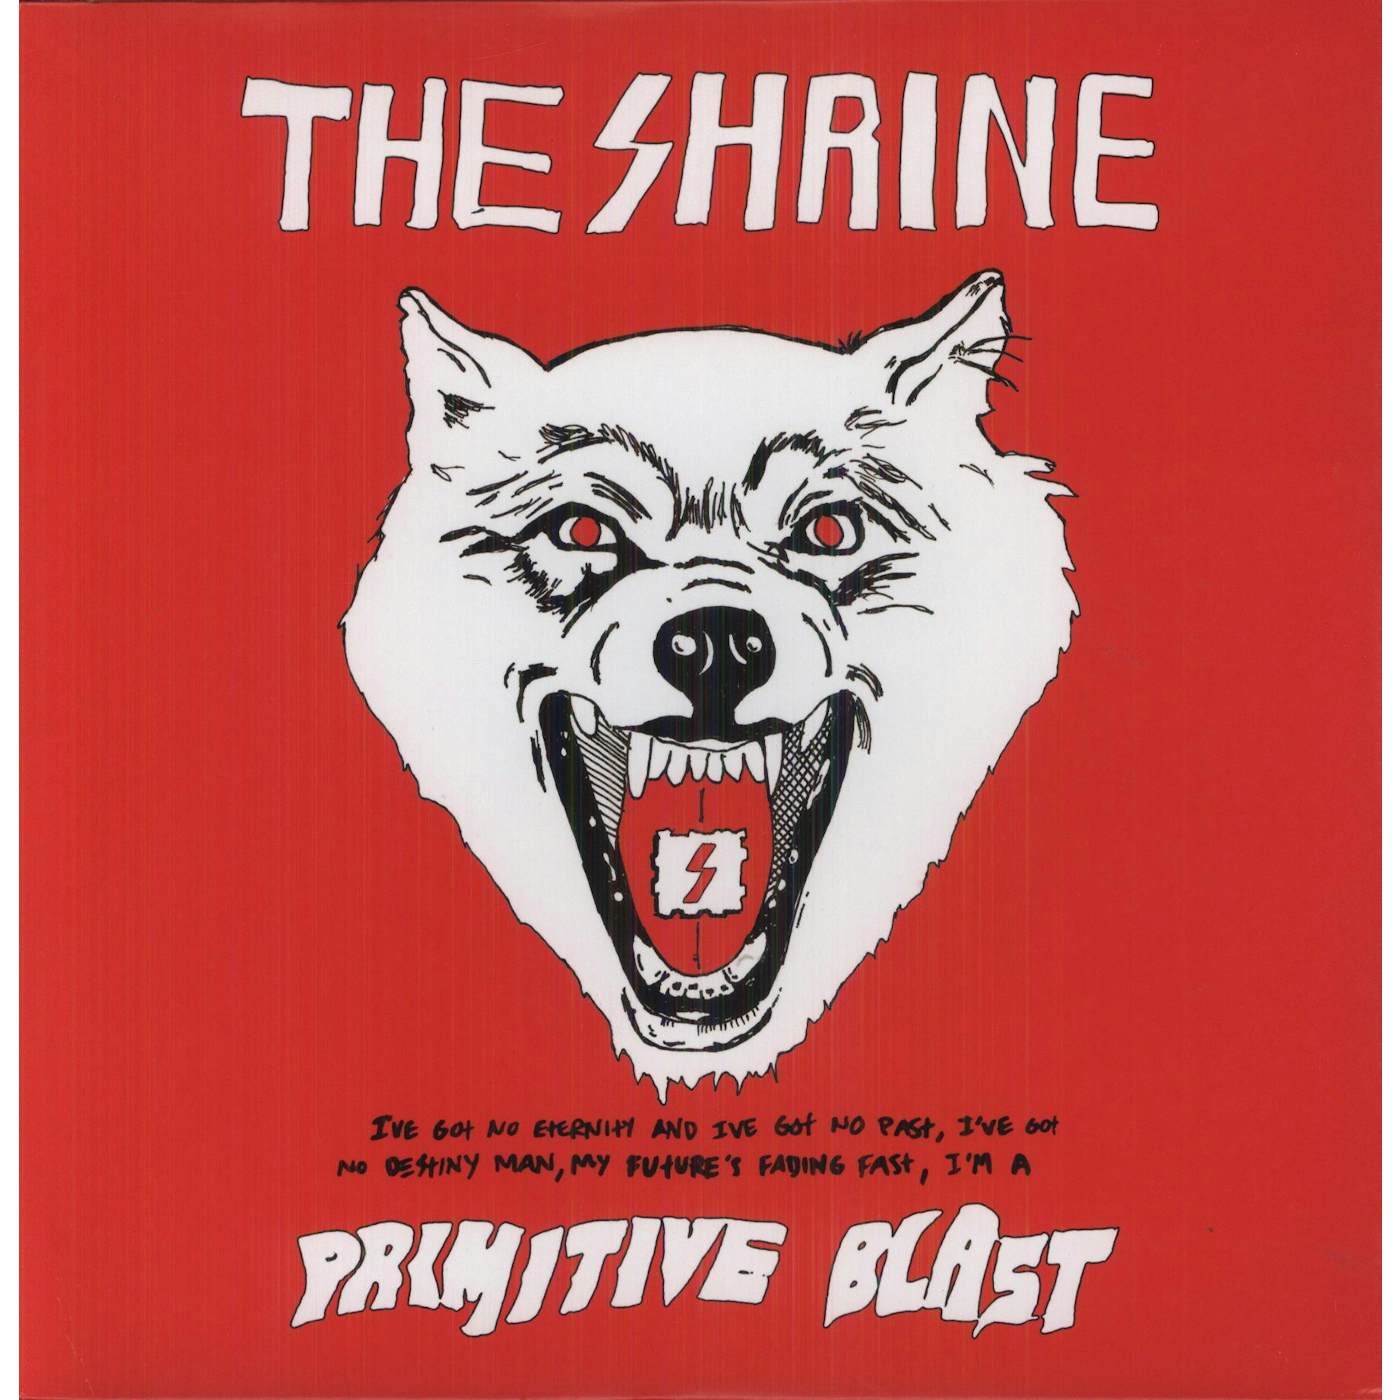 The Shrine Primitive Blast Vinyl Record